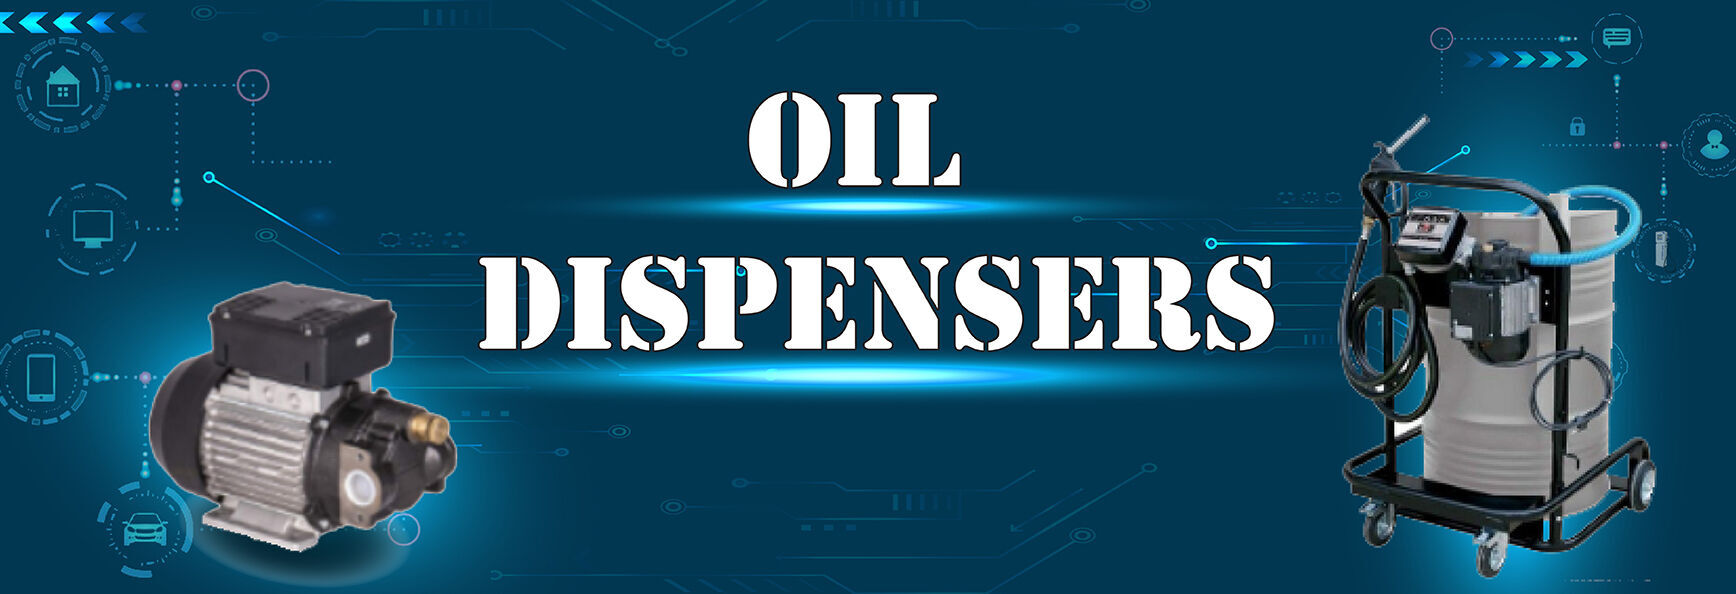 OIL DISPENSERS